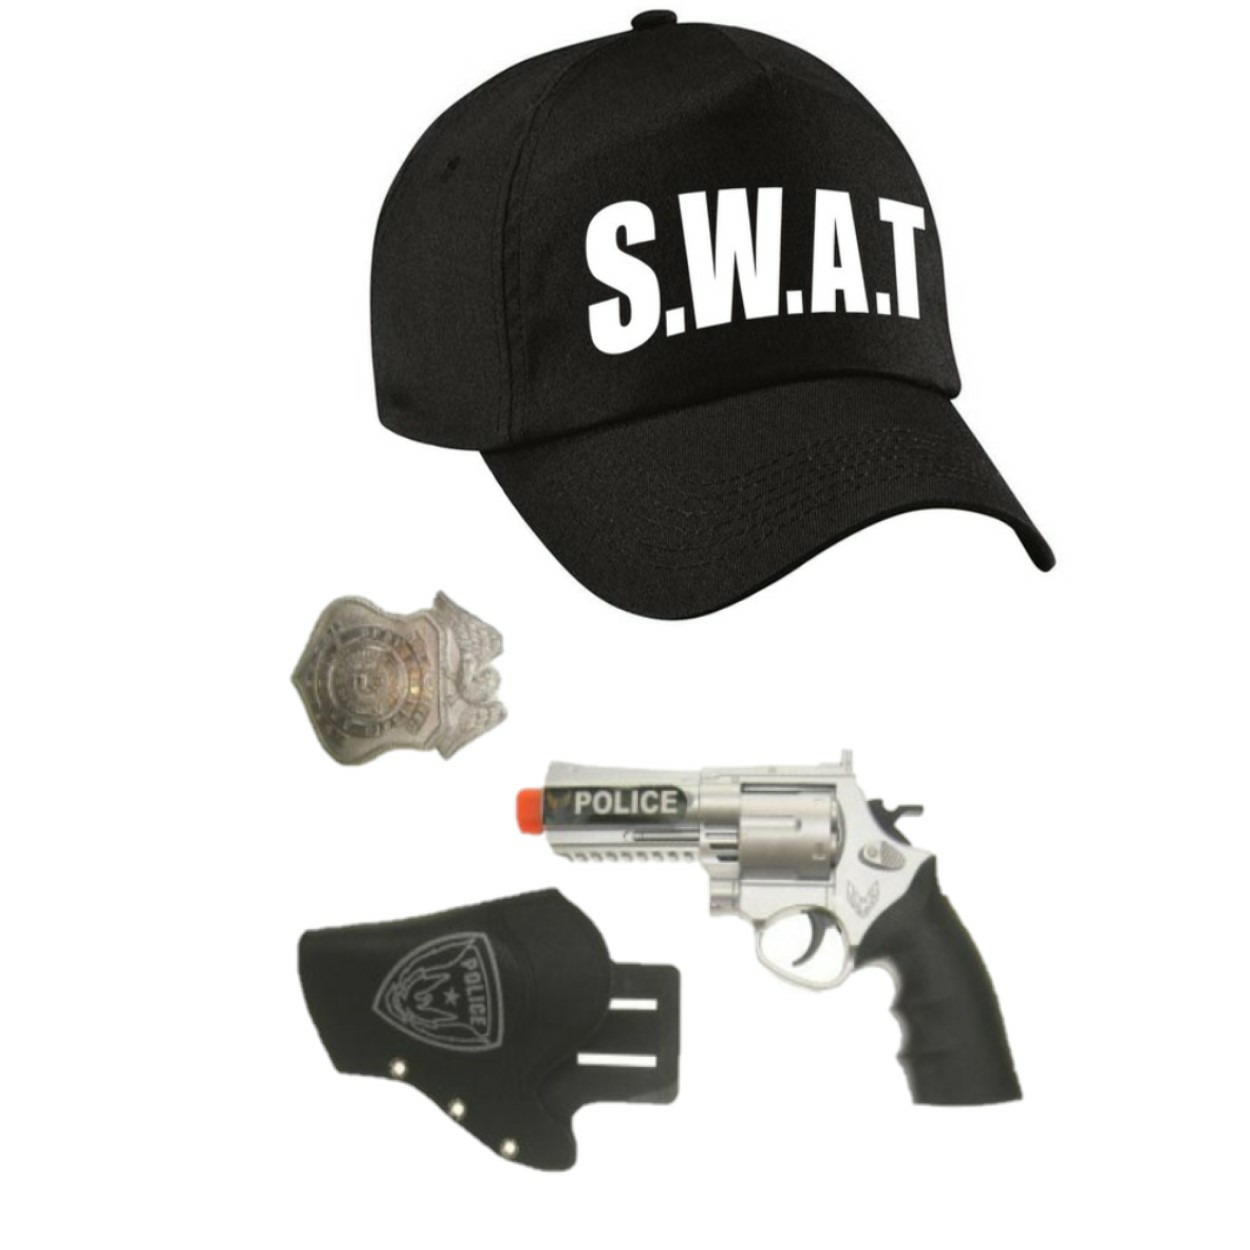 Politie-SWAT team verkleed cap-pet blauw met pistool-holster-badge voor kinderen